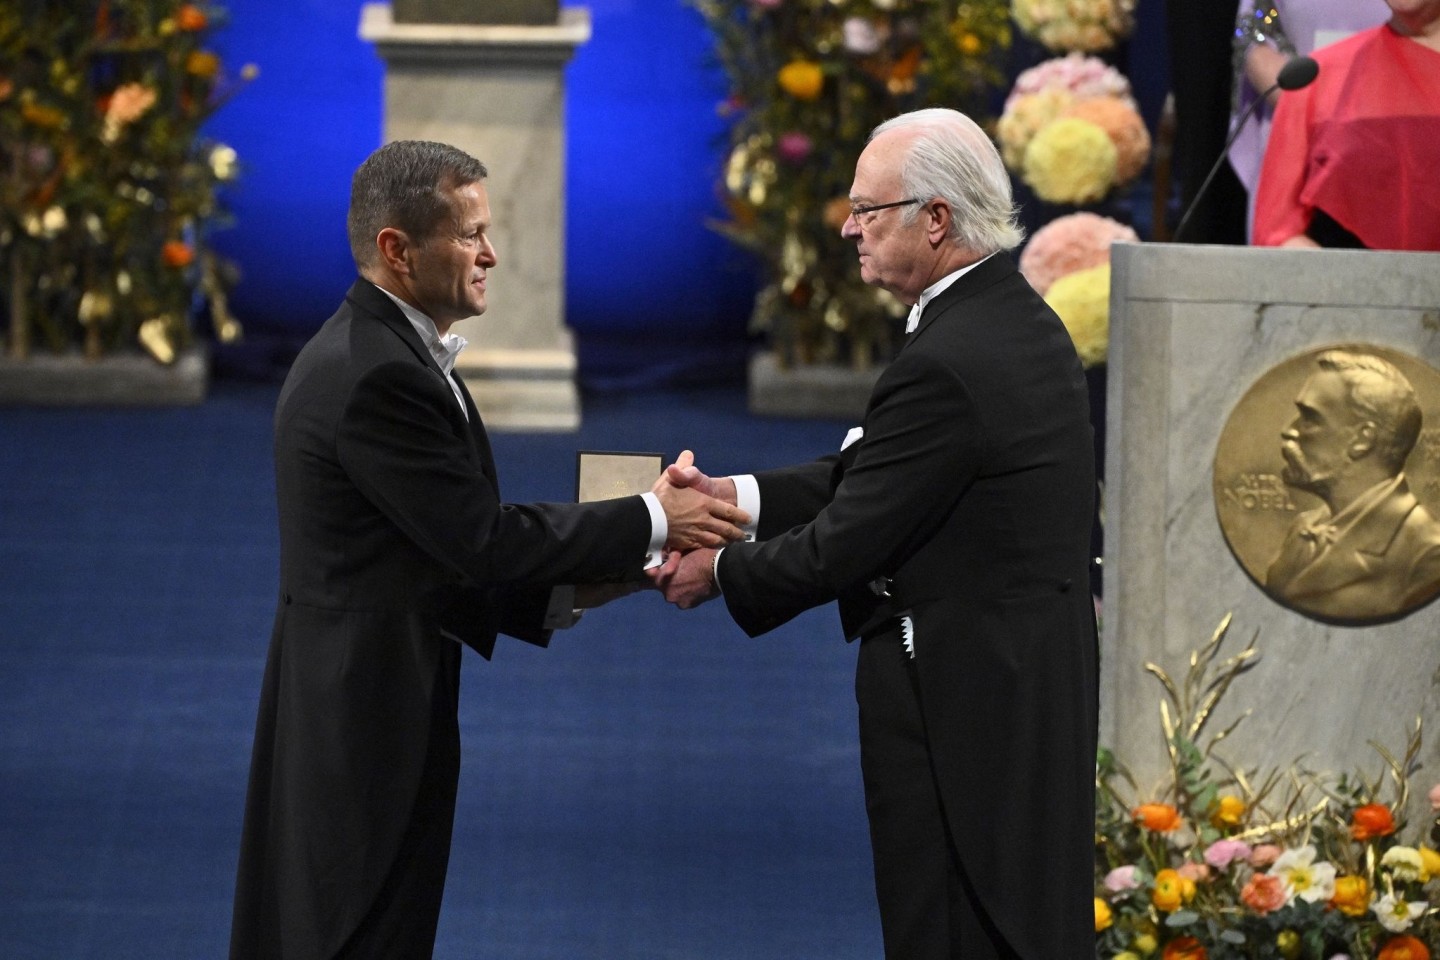 Ferenc Krausz (l) bekommt den Nobelpreis für Physik 2023 von Schwedens König Carl XVI. Gustaf in Stockholm.